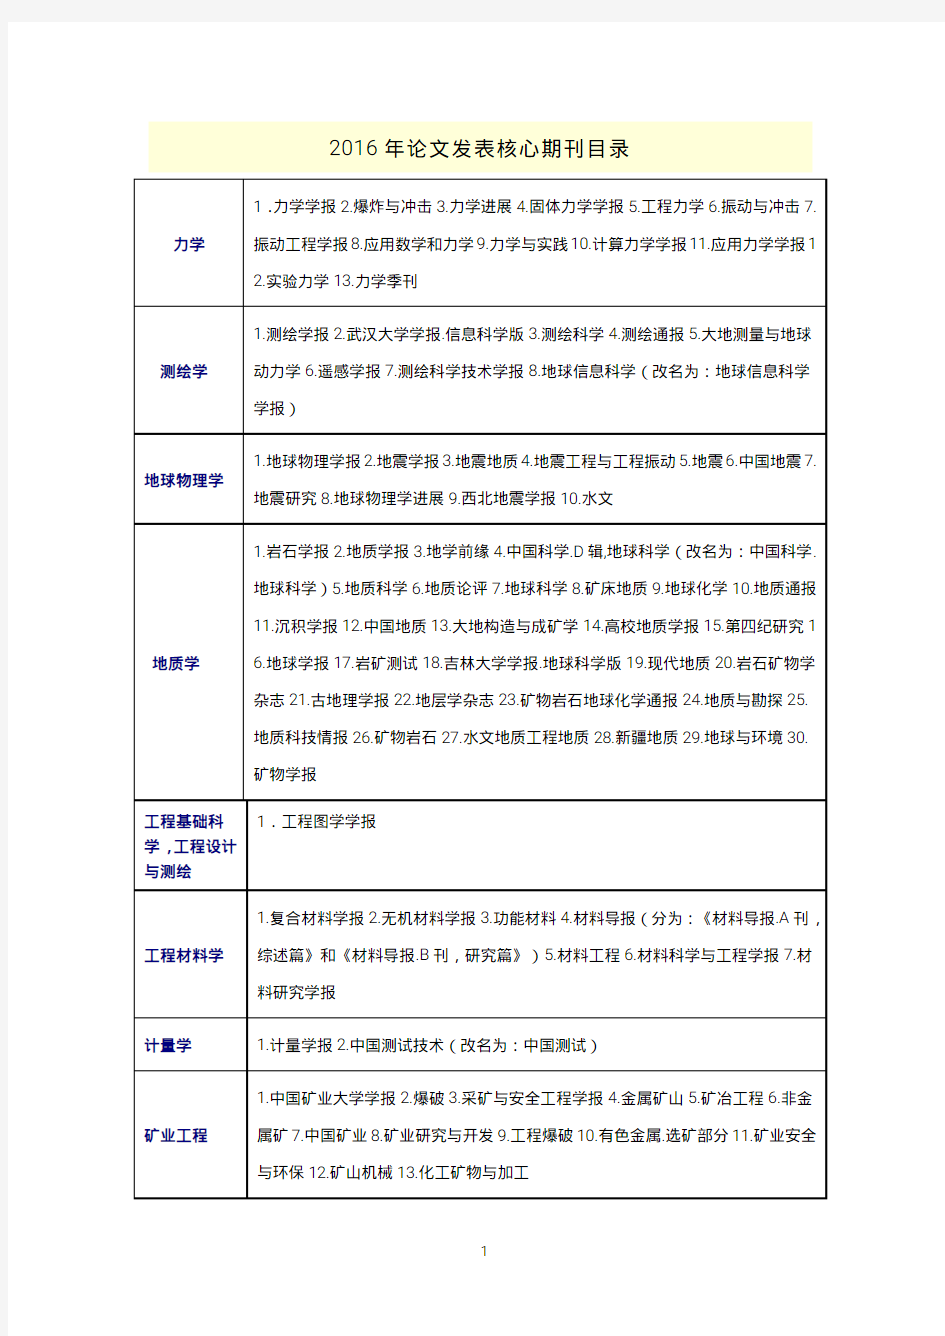 2016年北大版《中文核心期刊要目总览》